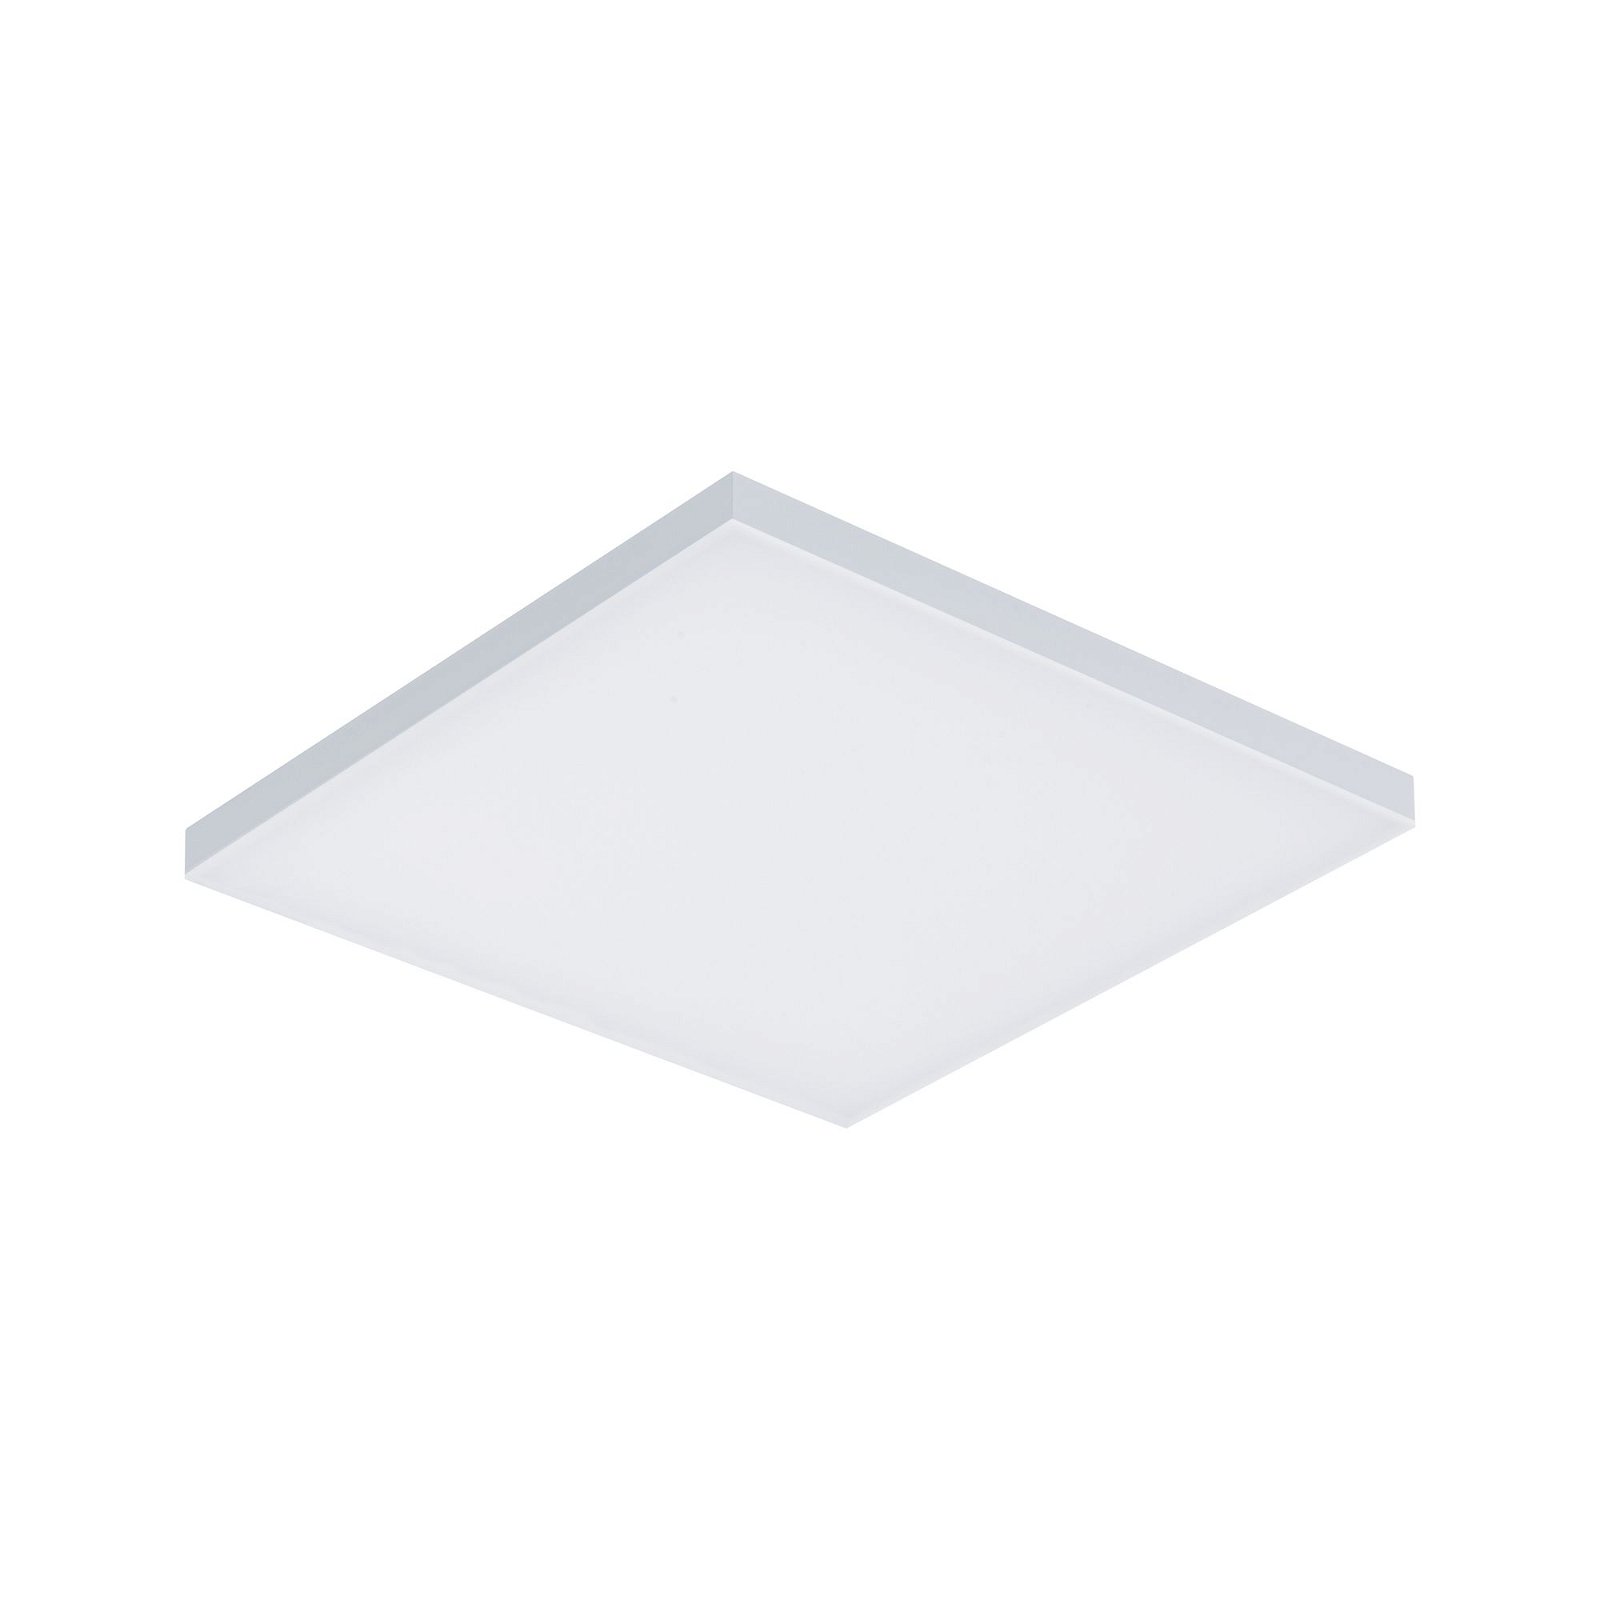 LED-paneel Smart Home Zigbee Velora hoekig 295x295mm Tunable White Wit mat dimbaar